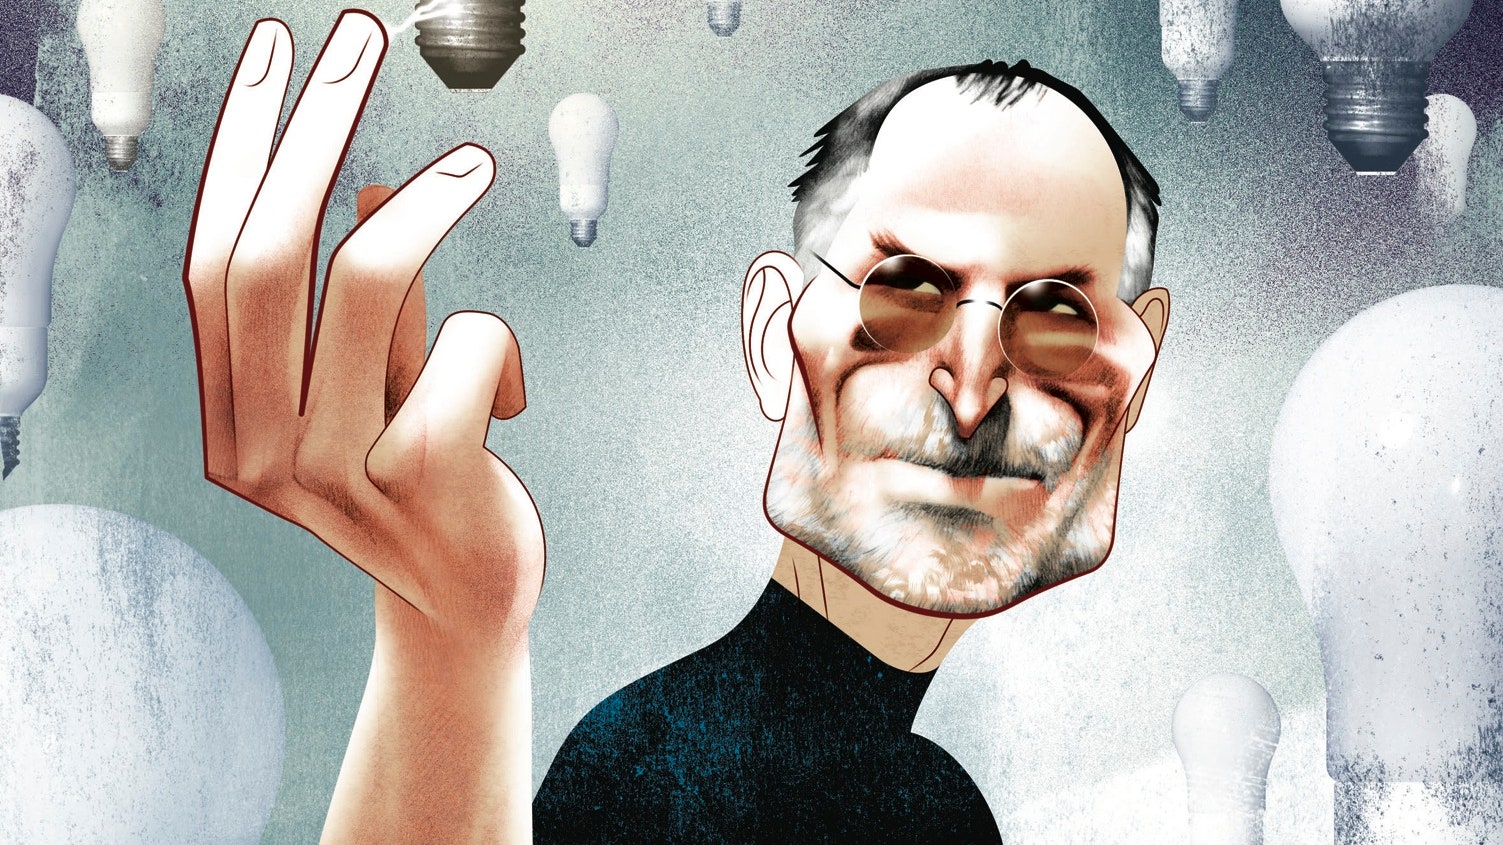 Sự thật ngỡ ngàng về EQ của Steve Jobs: CEO truyền cảm hứng nhưng hống hách, nóng nảy thất thường, thôi thúc người khác phải mua Apple bằng bí quyết đặc biệt - Ảnh 1.